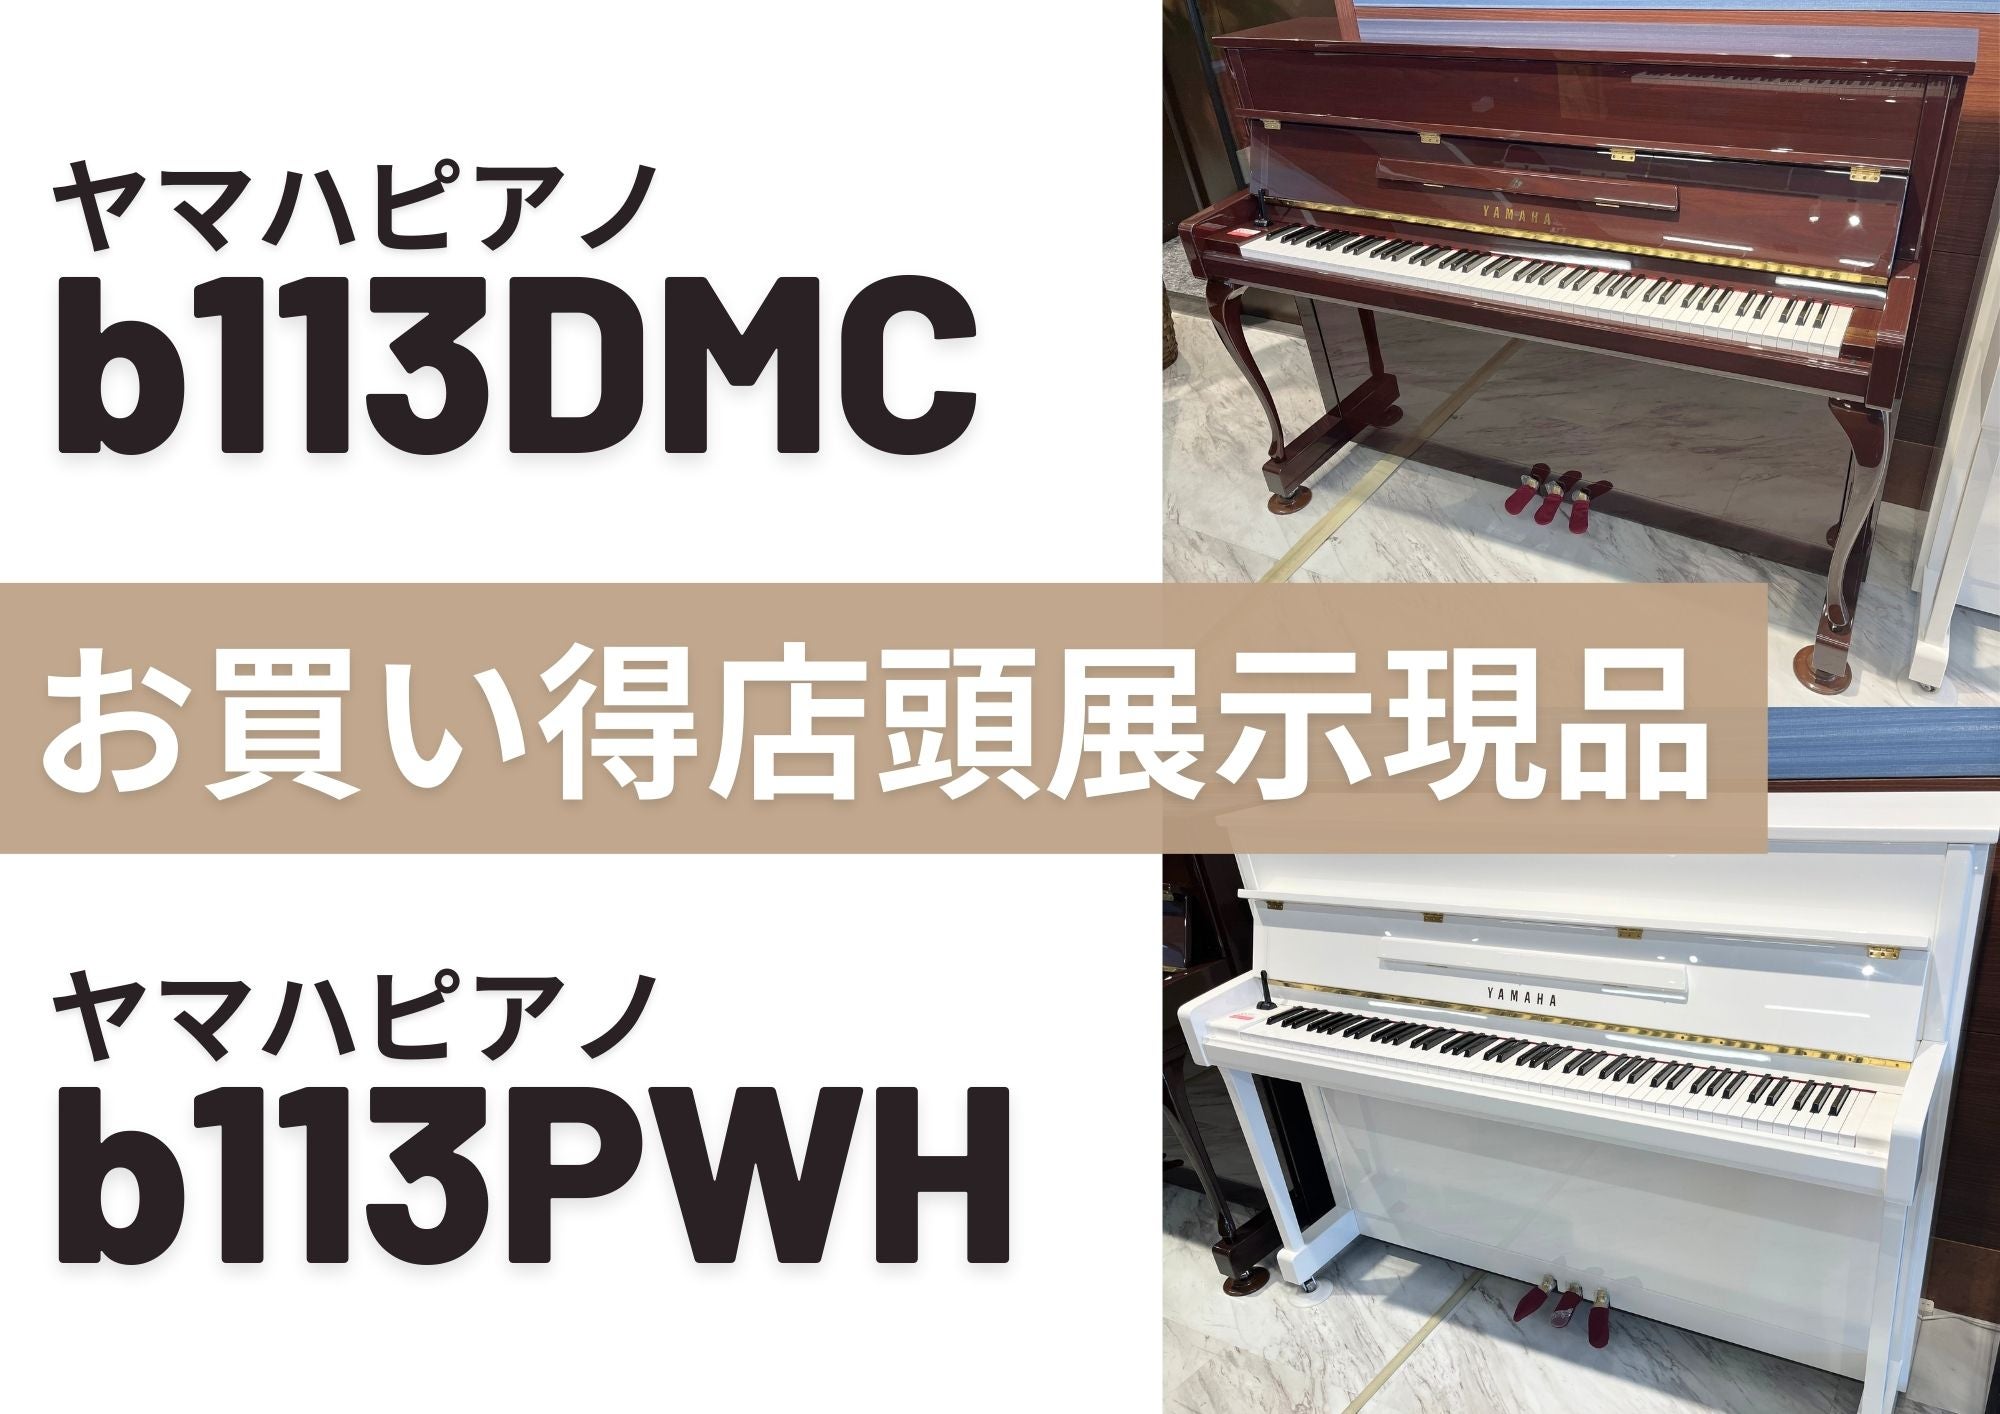 今月のお買い得商品   新品ピアノ【　b113DMC 】【b113PWH 】
展示現品 特価